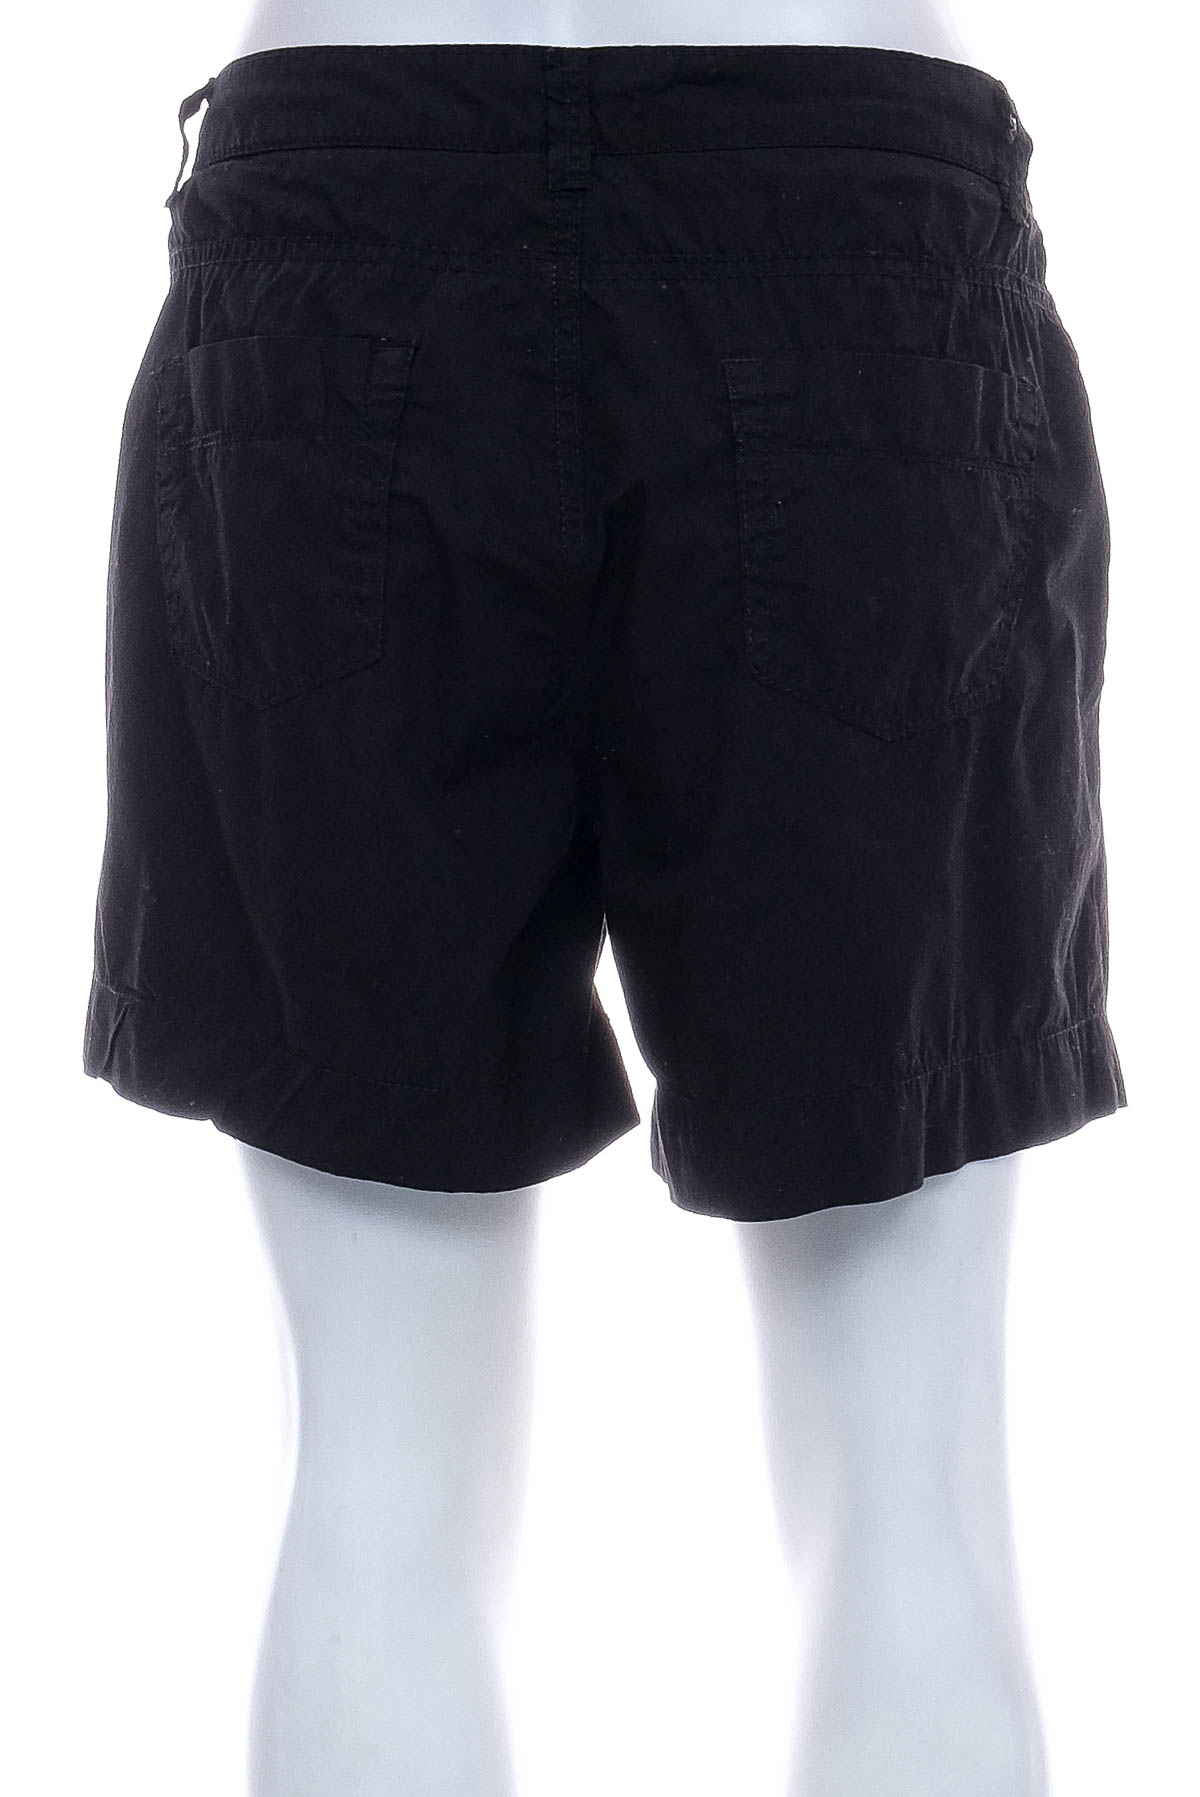 Female shorts - Vintage - 1